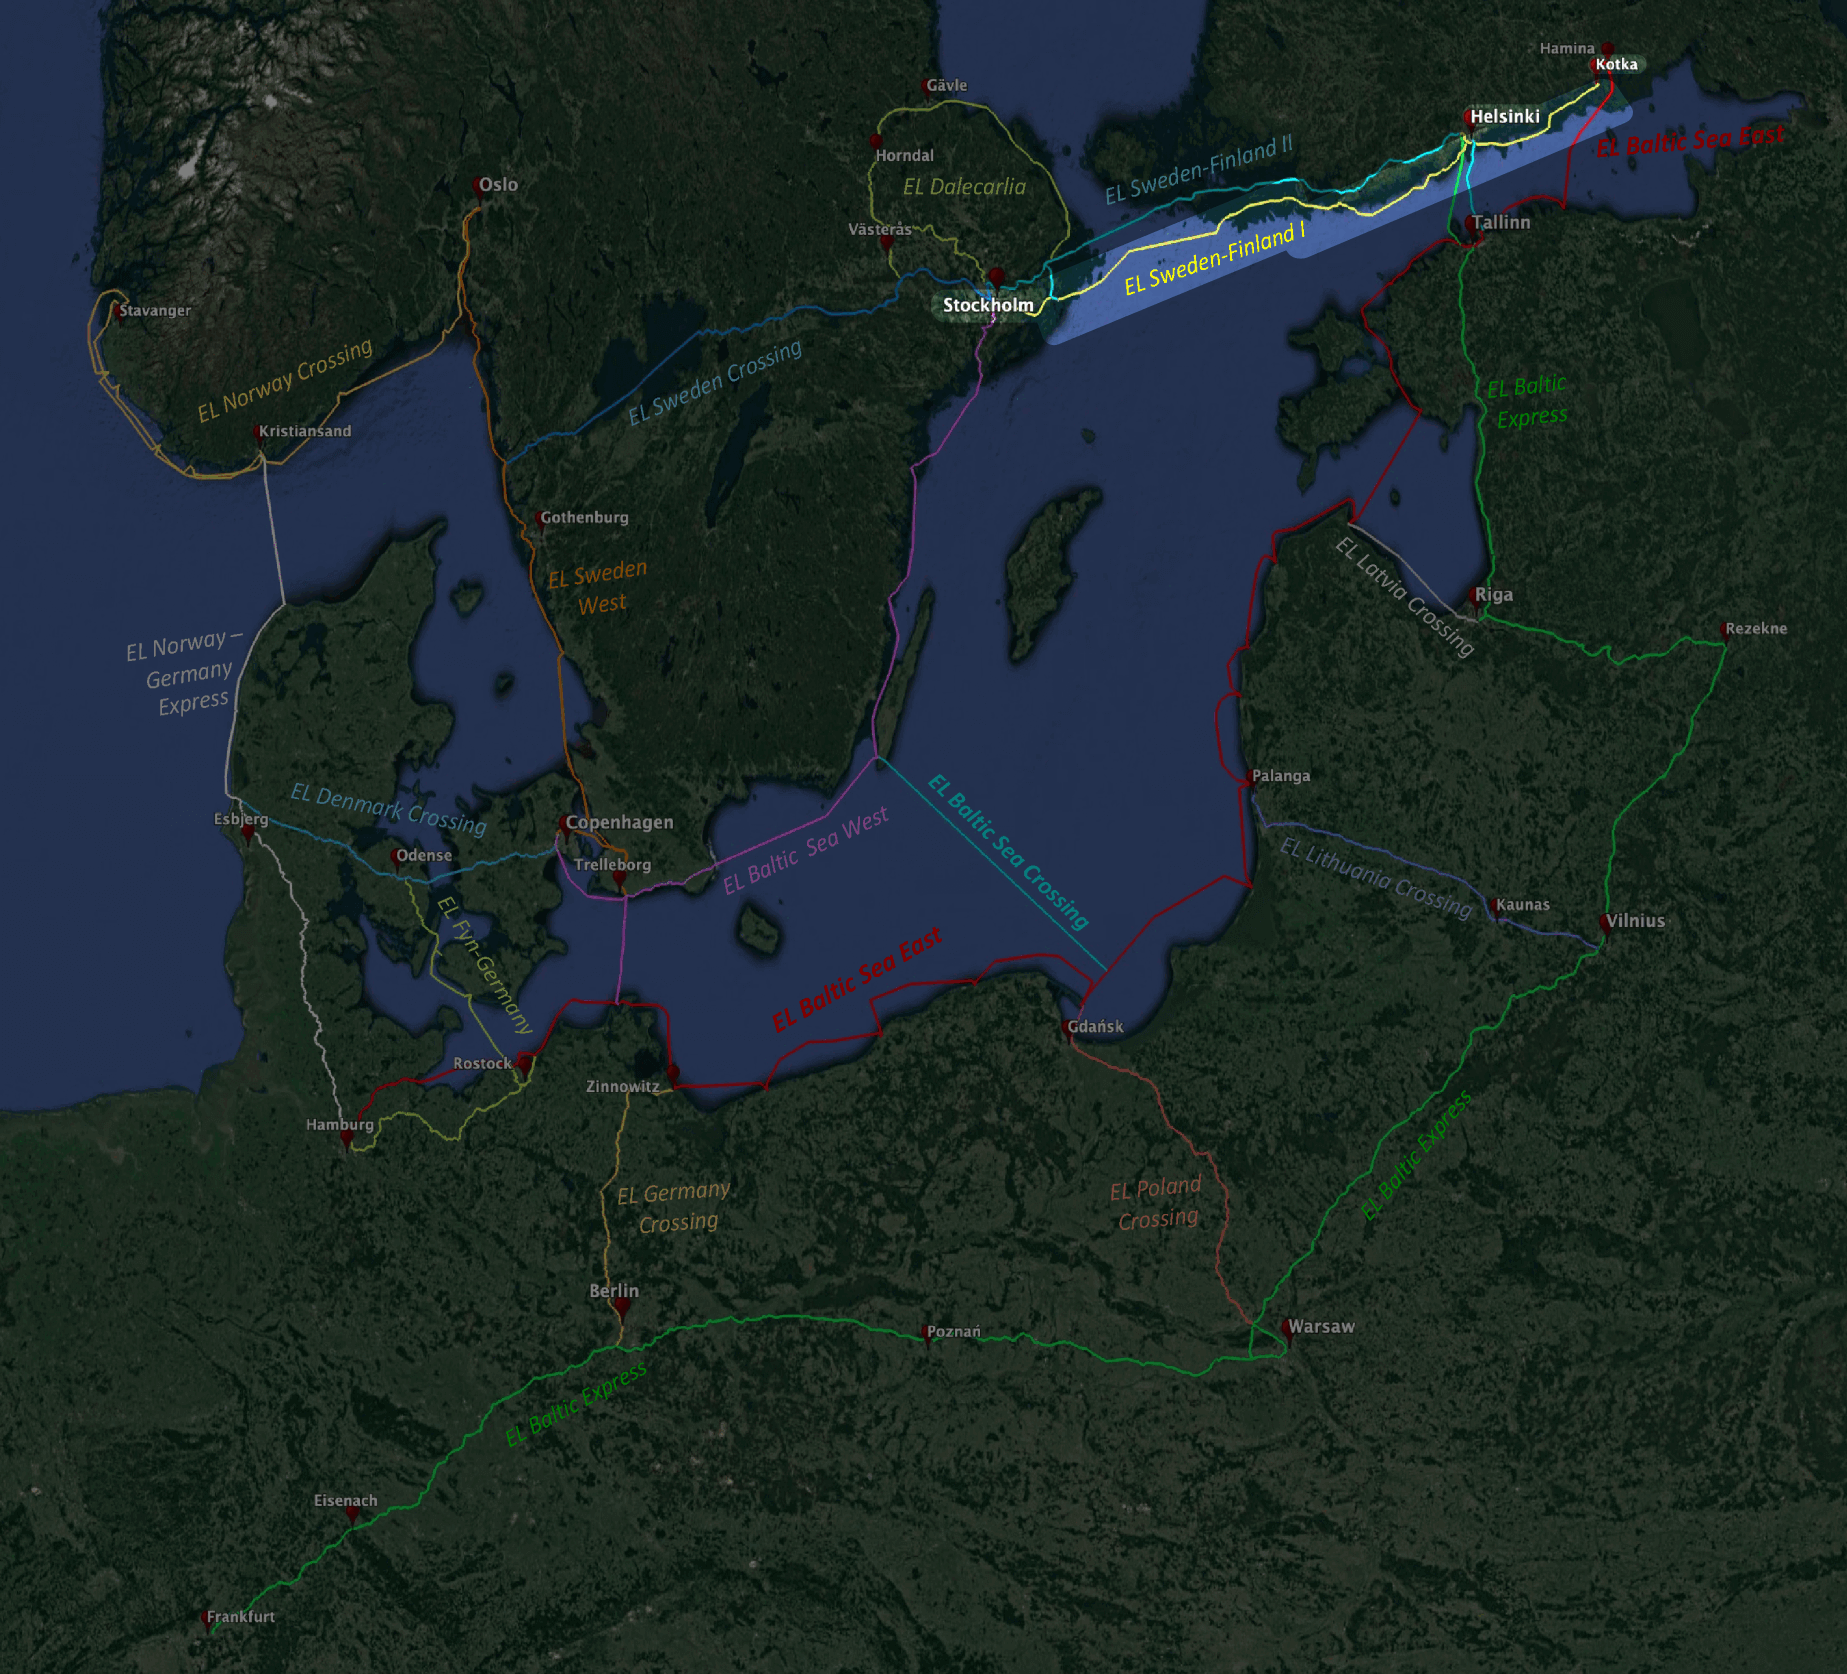 Eastern Light’s first leg: Fiber between Sweden and Finland (I)